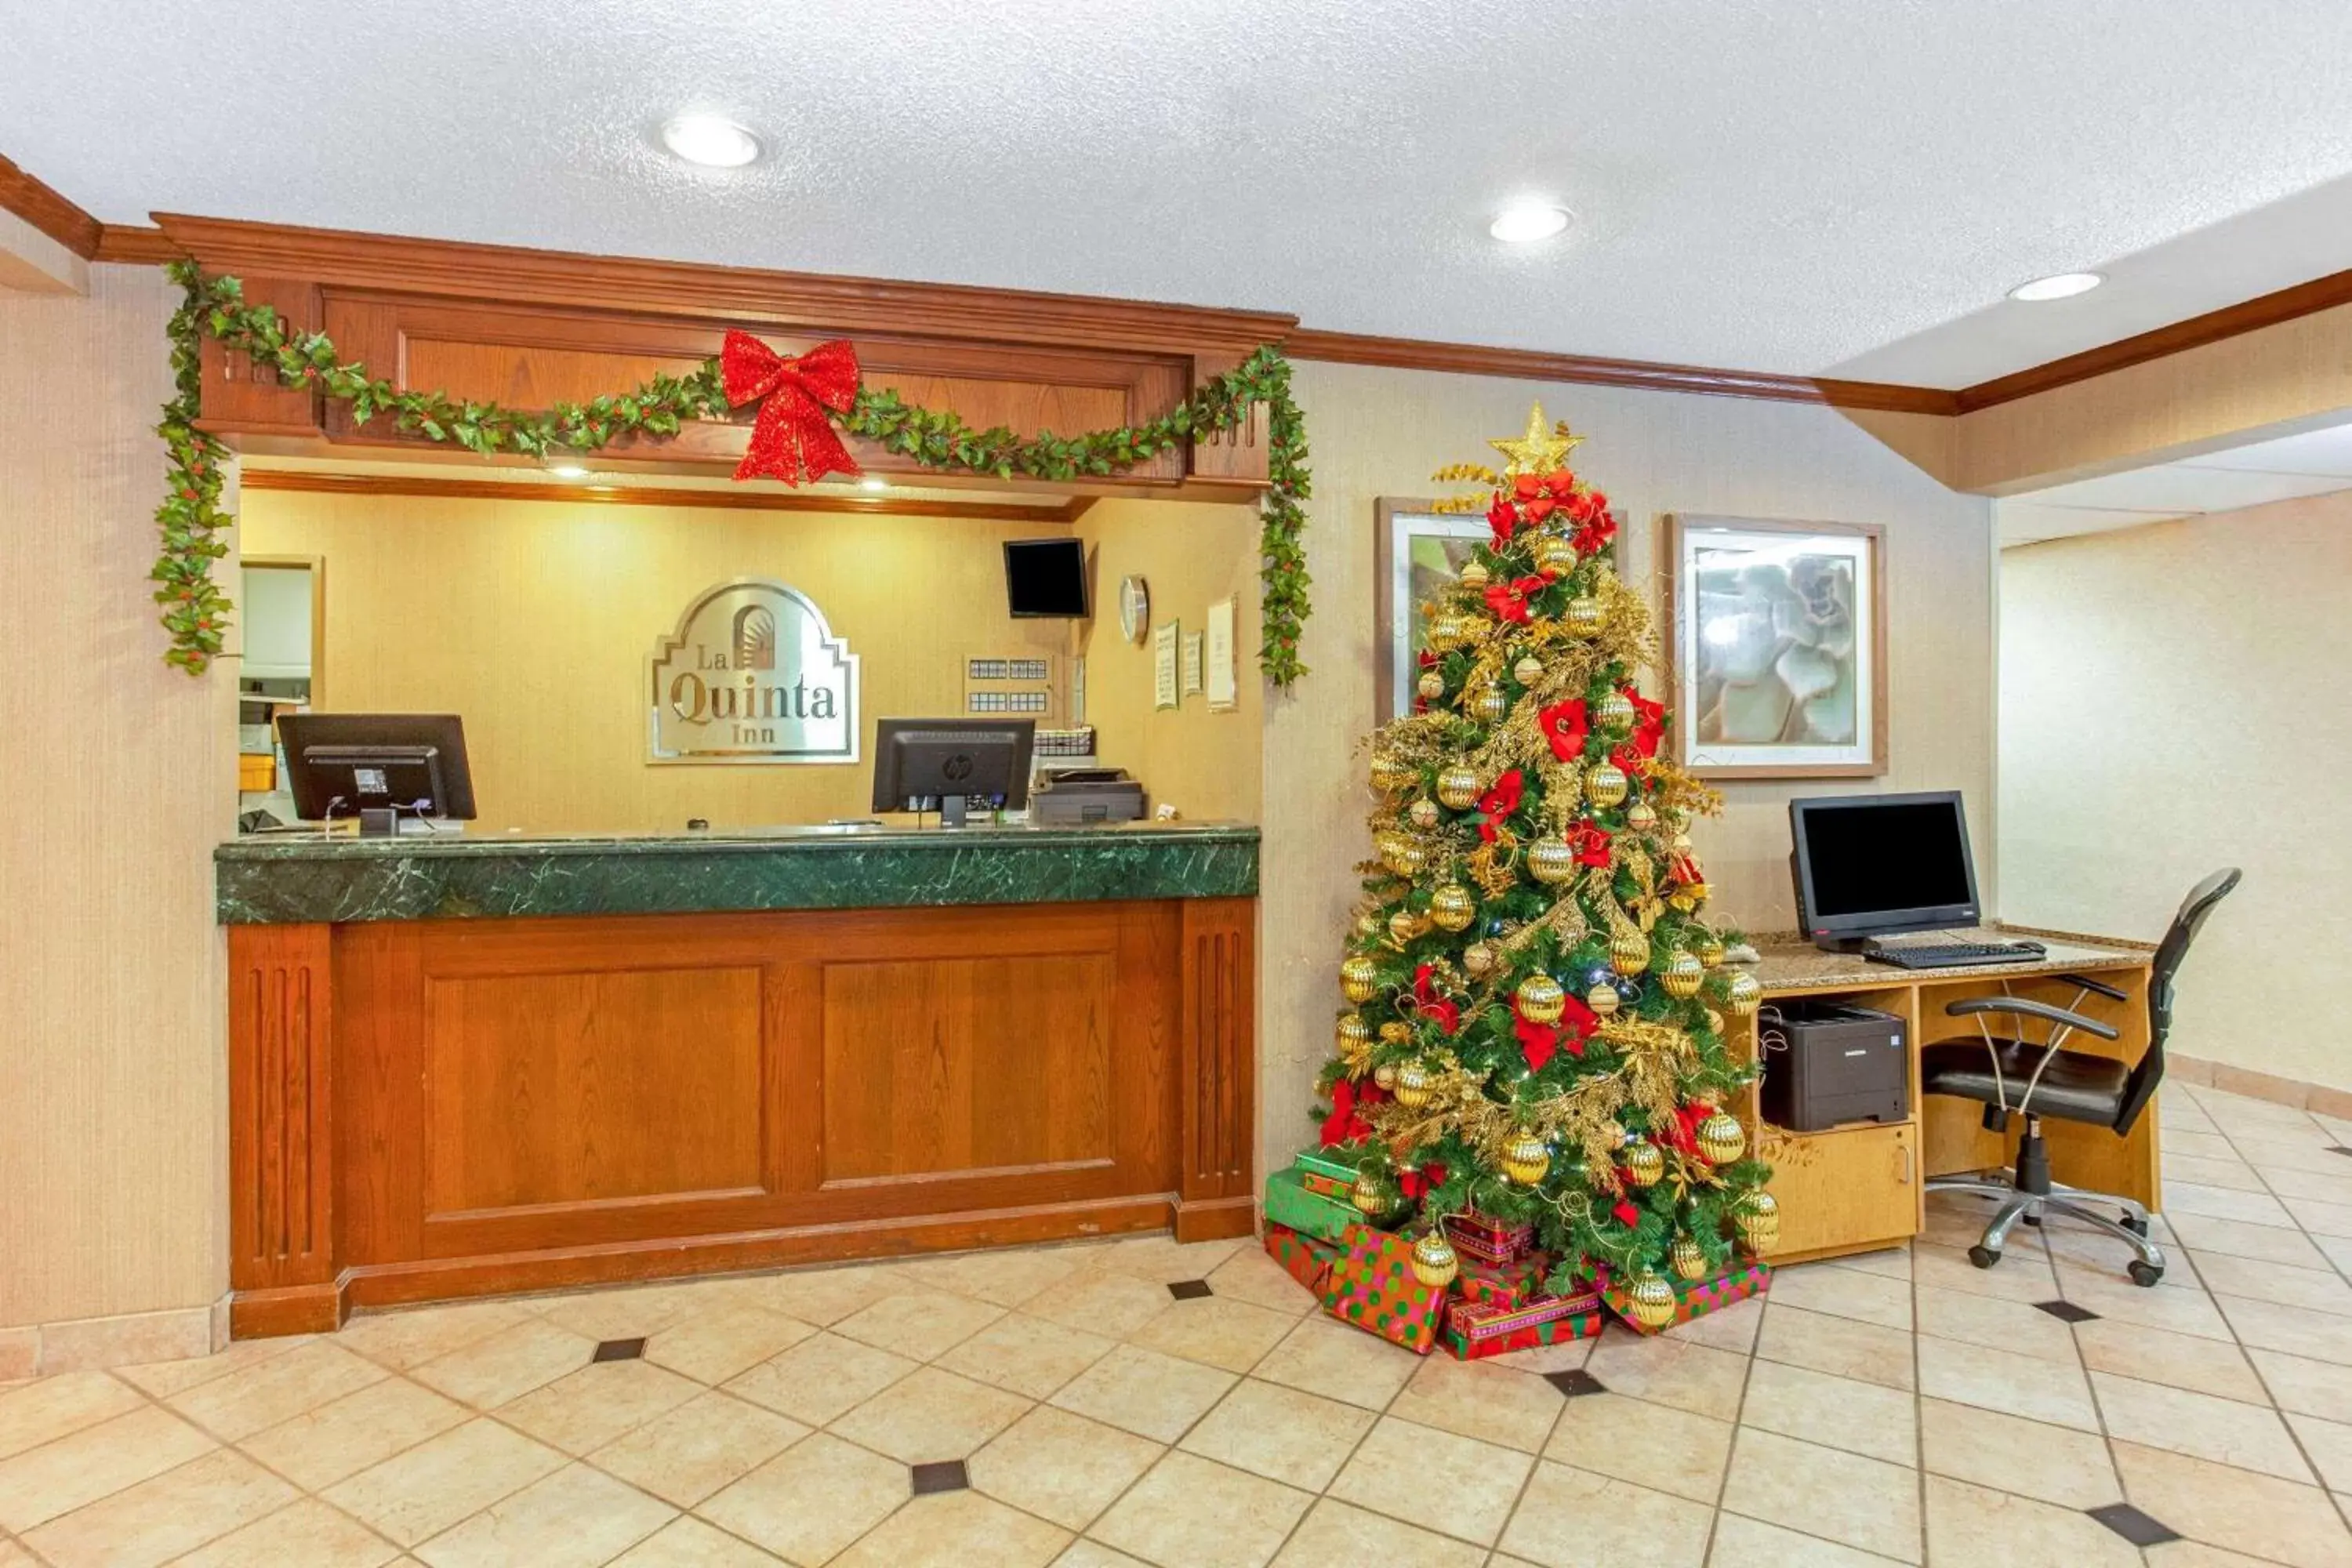 Lobby or reception, Lobby/Reception in La Quinta Inn by Wyndham Milwaukee Airport / Oak Creek